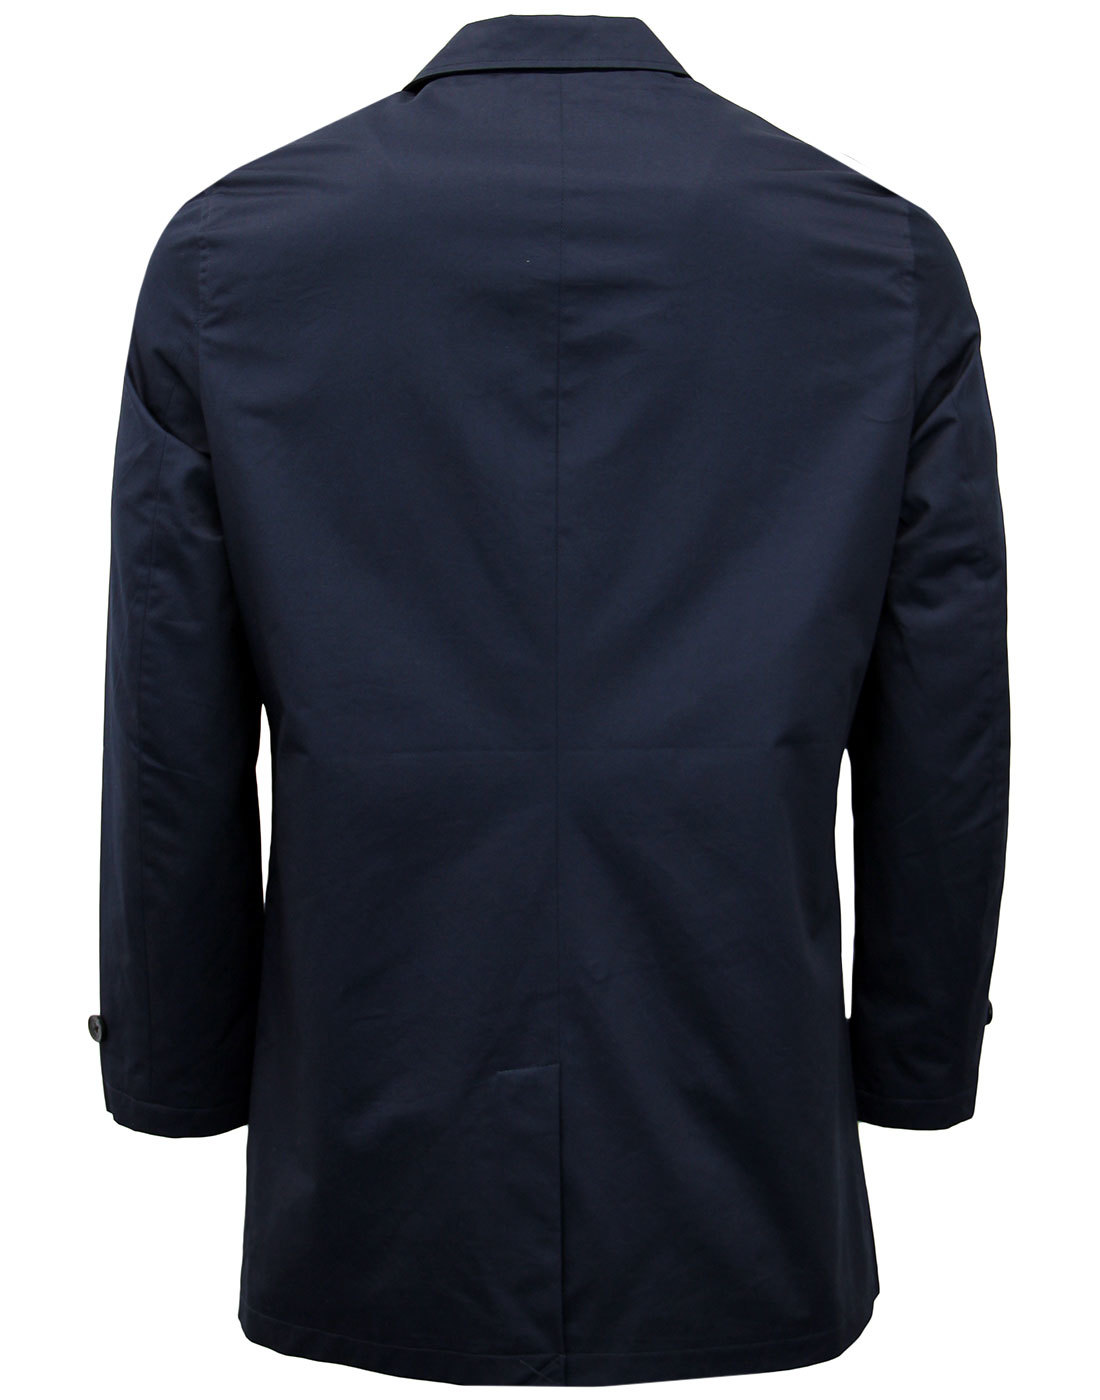 BEN SHERMAN Men's Retro 1960s Mod Cotton Mac Coat Jacket in Navy